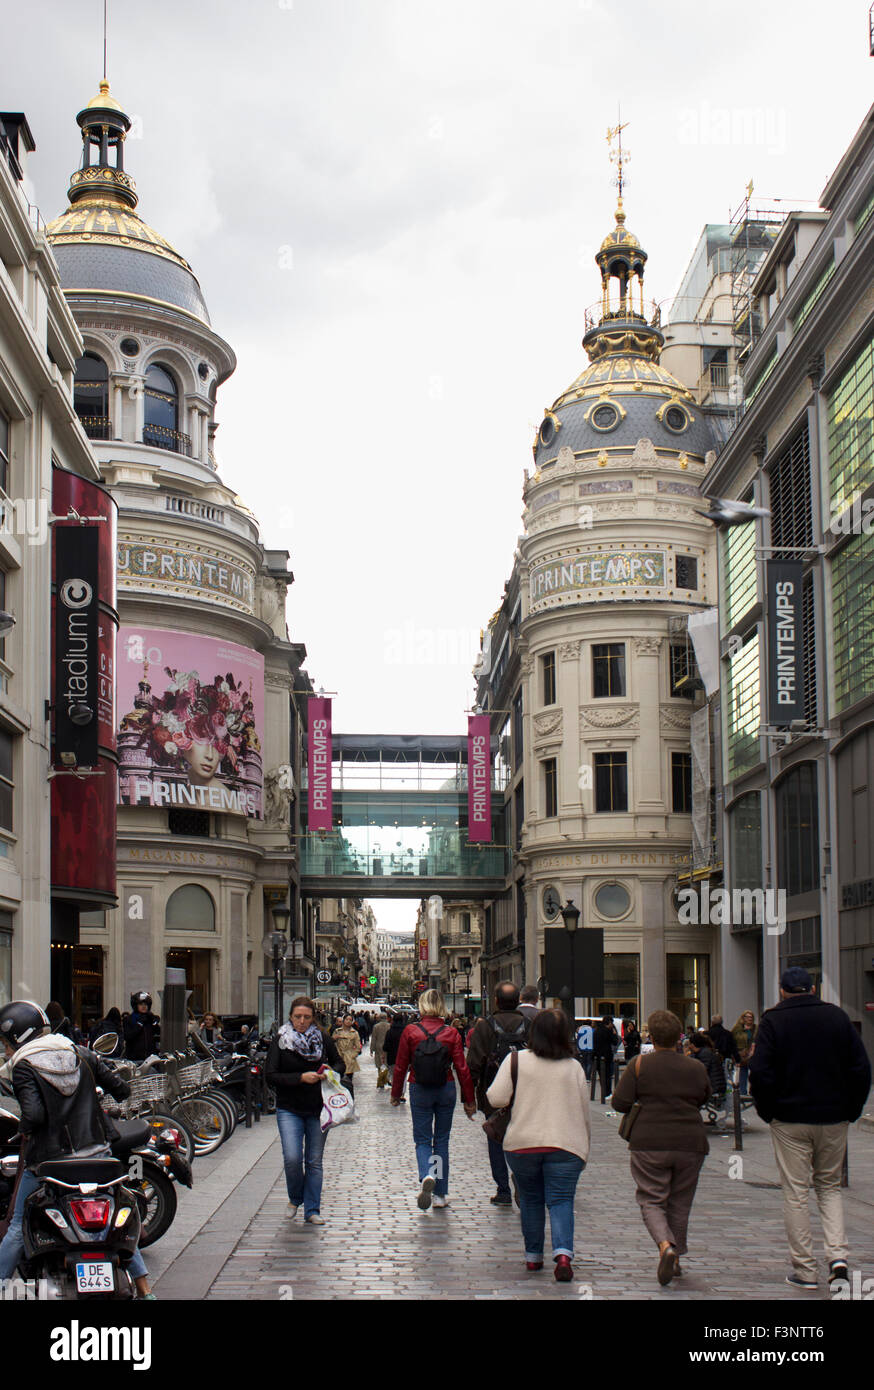 Gli amanti dello shopping passeggiando nel quartiere Opera con cupola Au Printemps department store in background. Parigi, Francia. Foto Stock